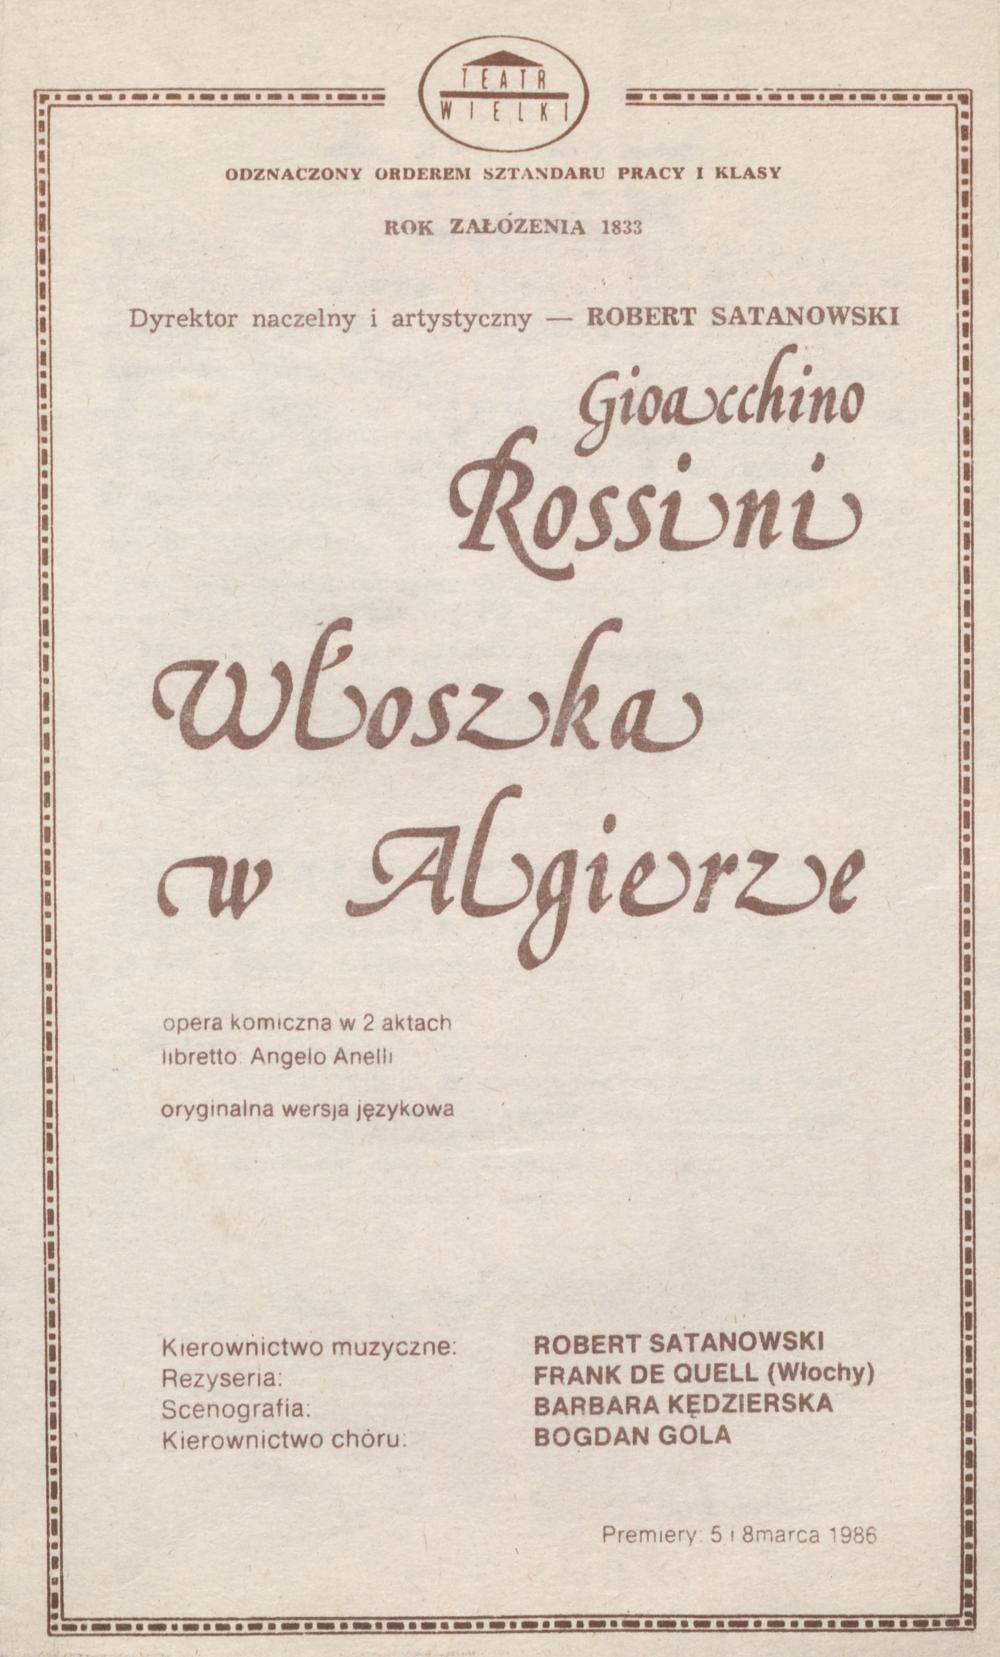 Wkładka premierowa „Włoszka w Algierze” Gioachino Rossini 08-03-1986